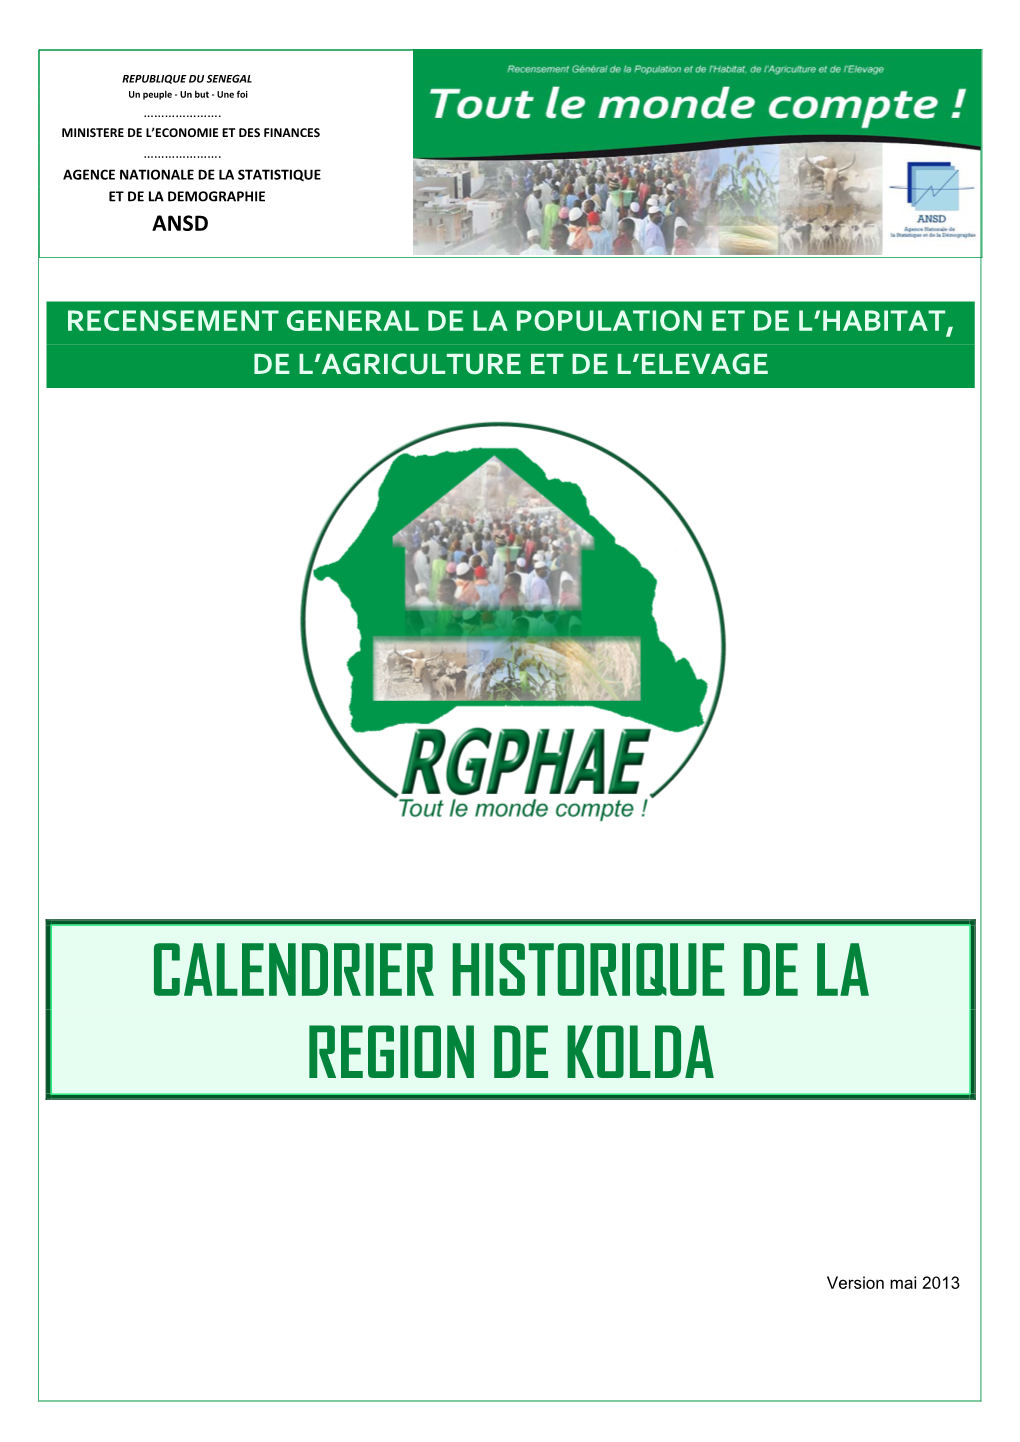 Calendrier Historique De La Region De Kolda